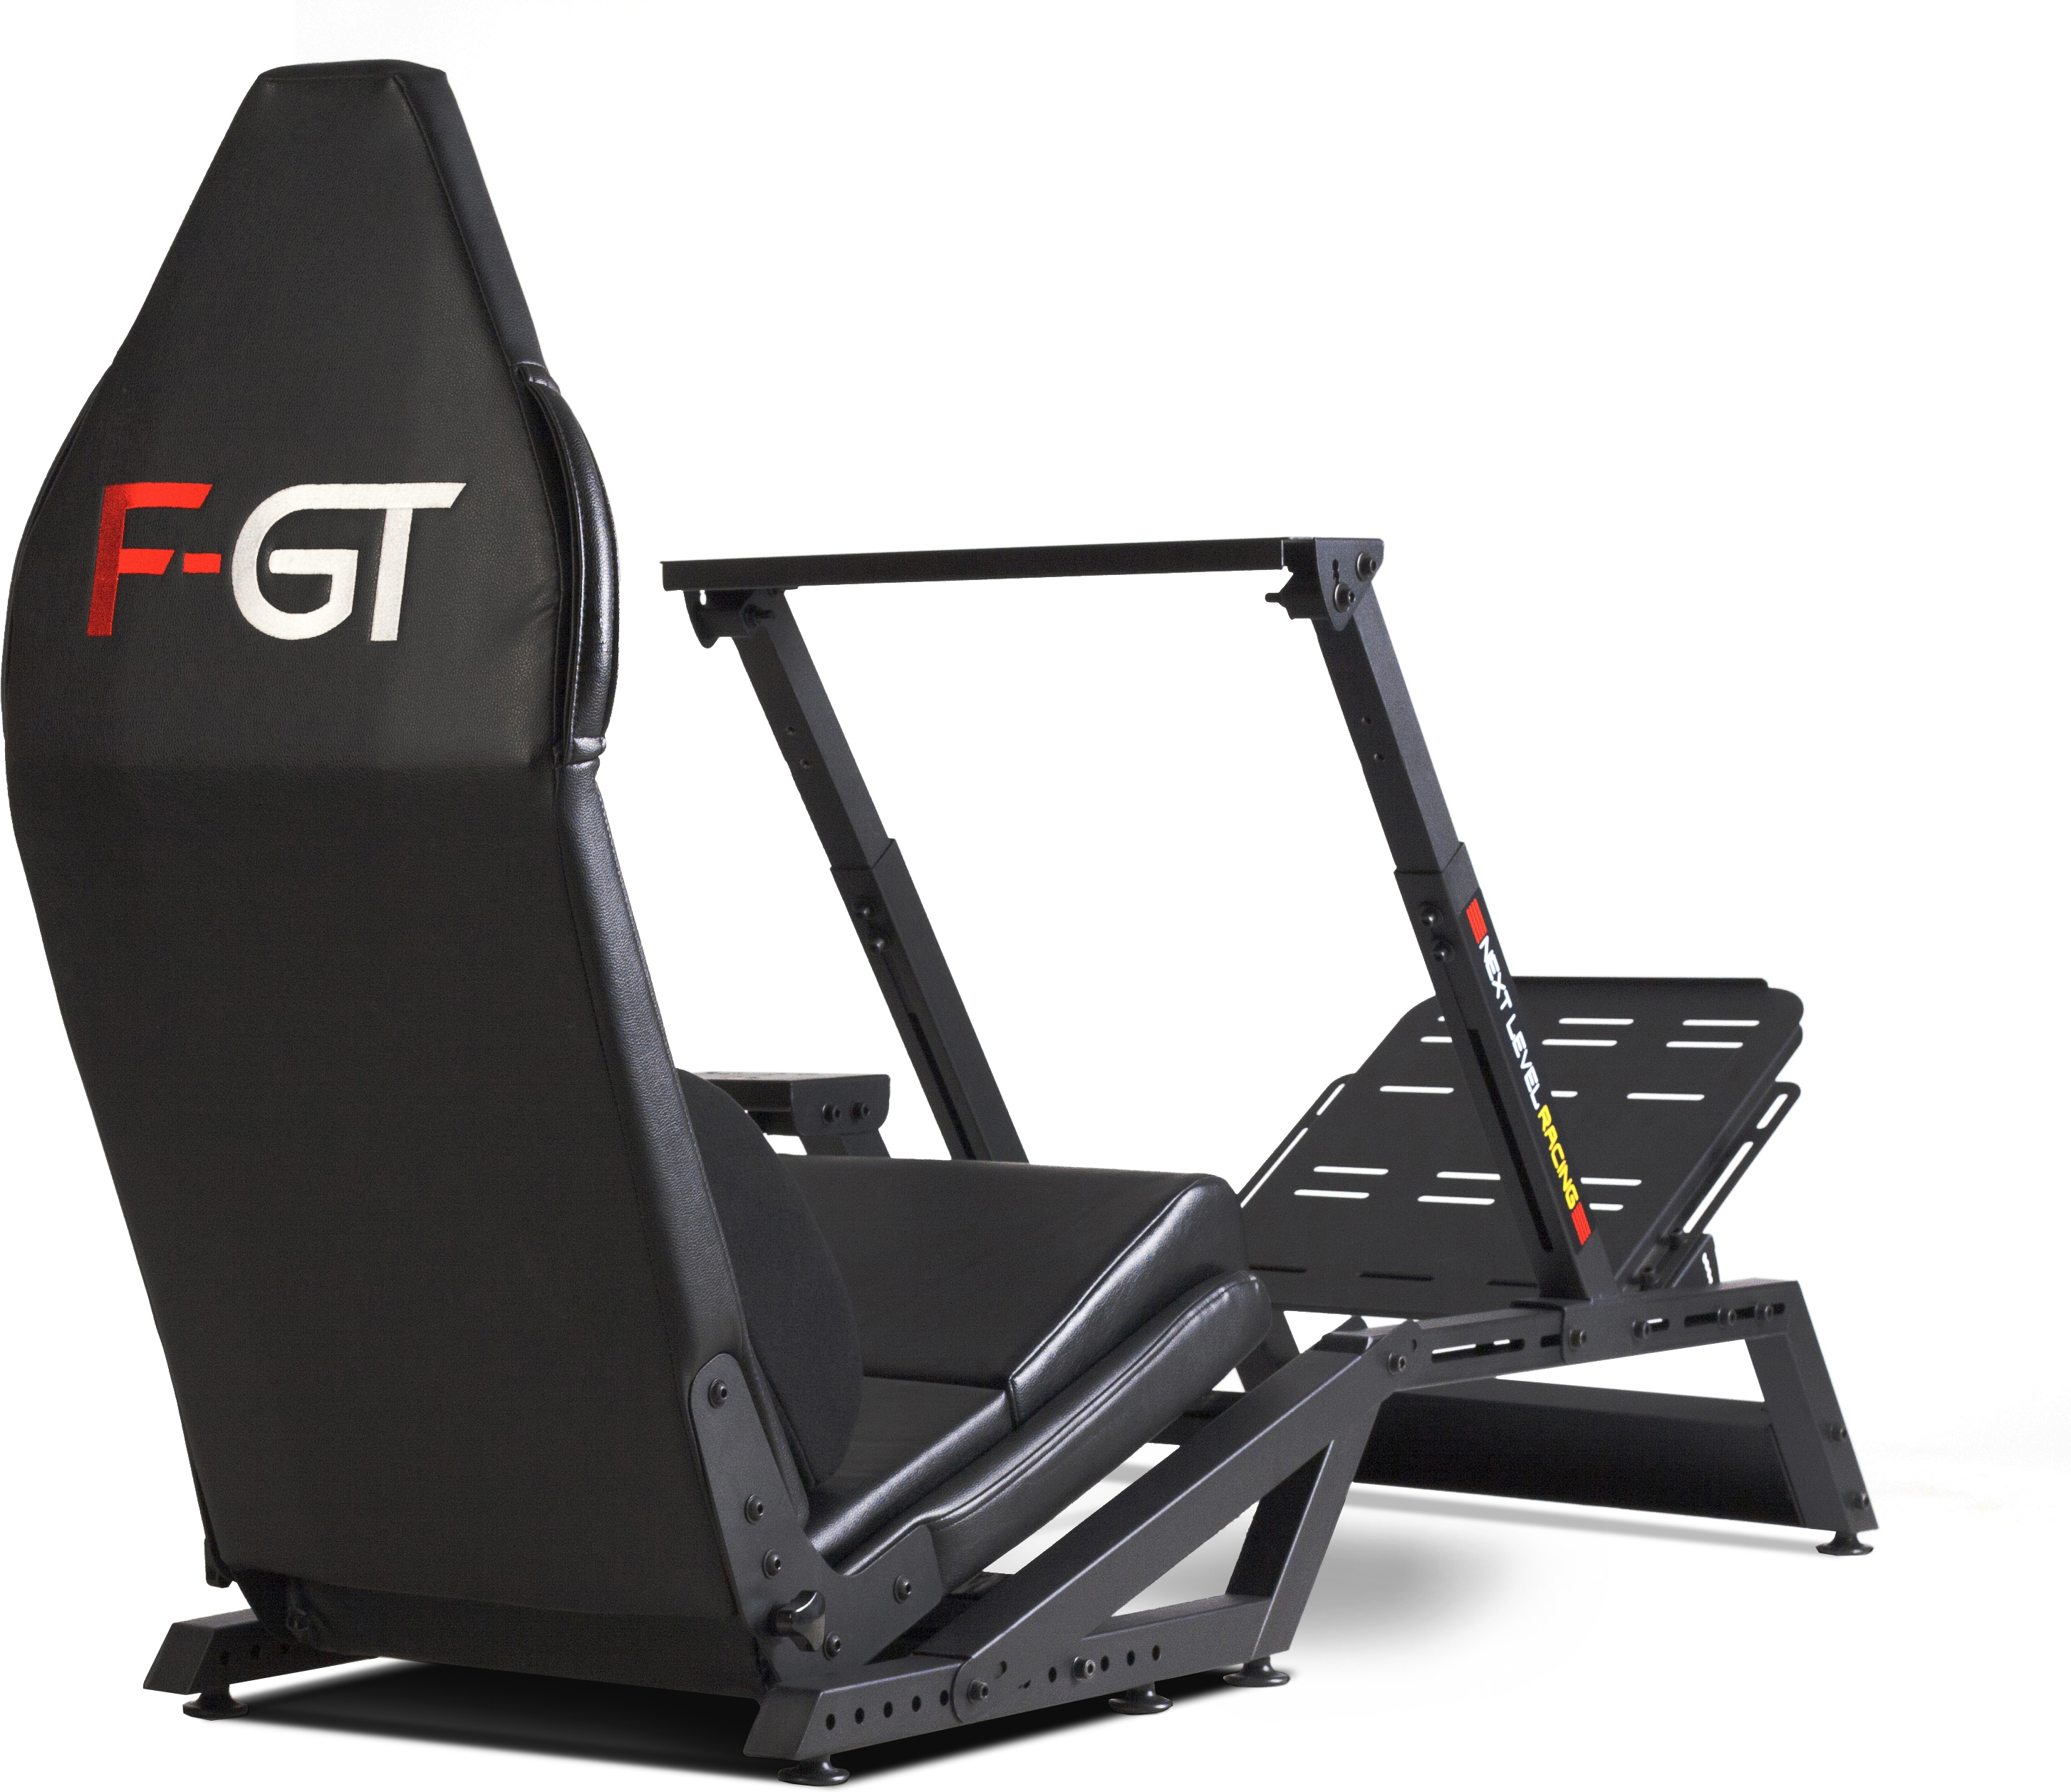 Кокпит gt Racing. Next Level Racing gt Lite Foldable Simulator Cockpit - Black. Кокпит съемный gr.